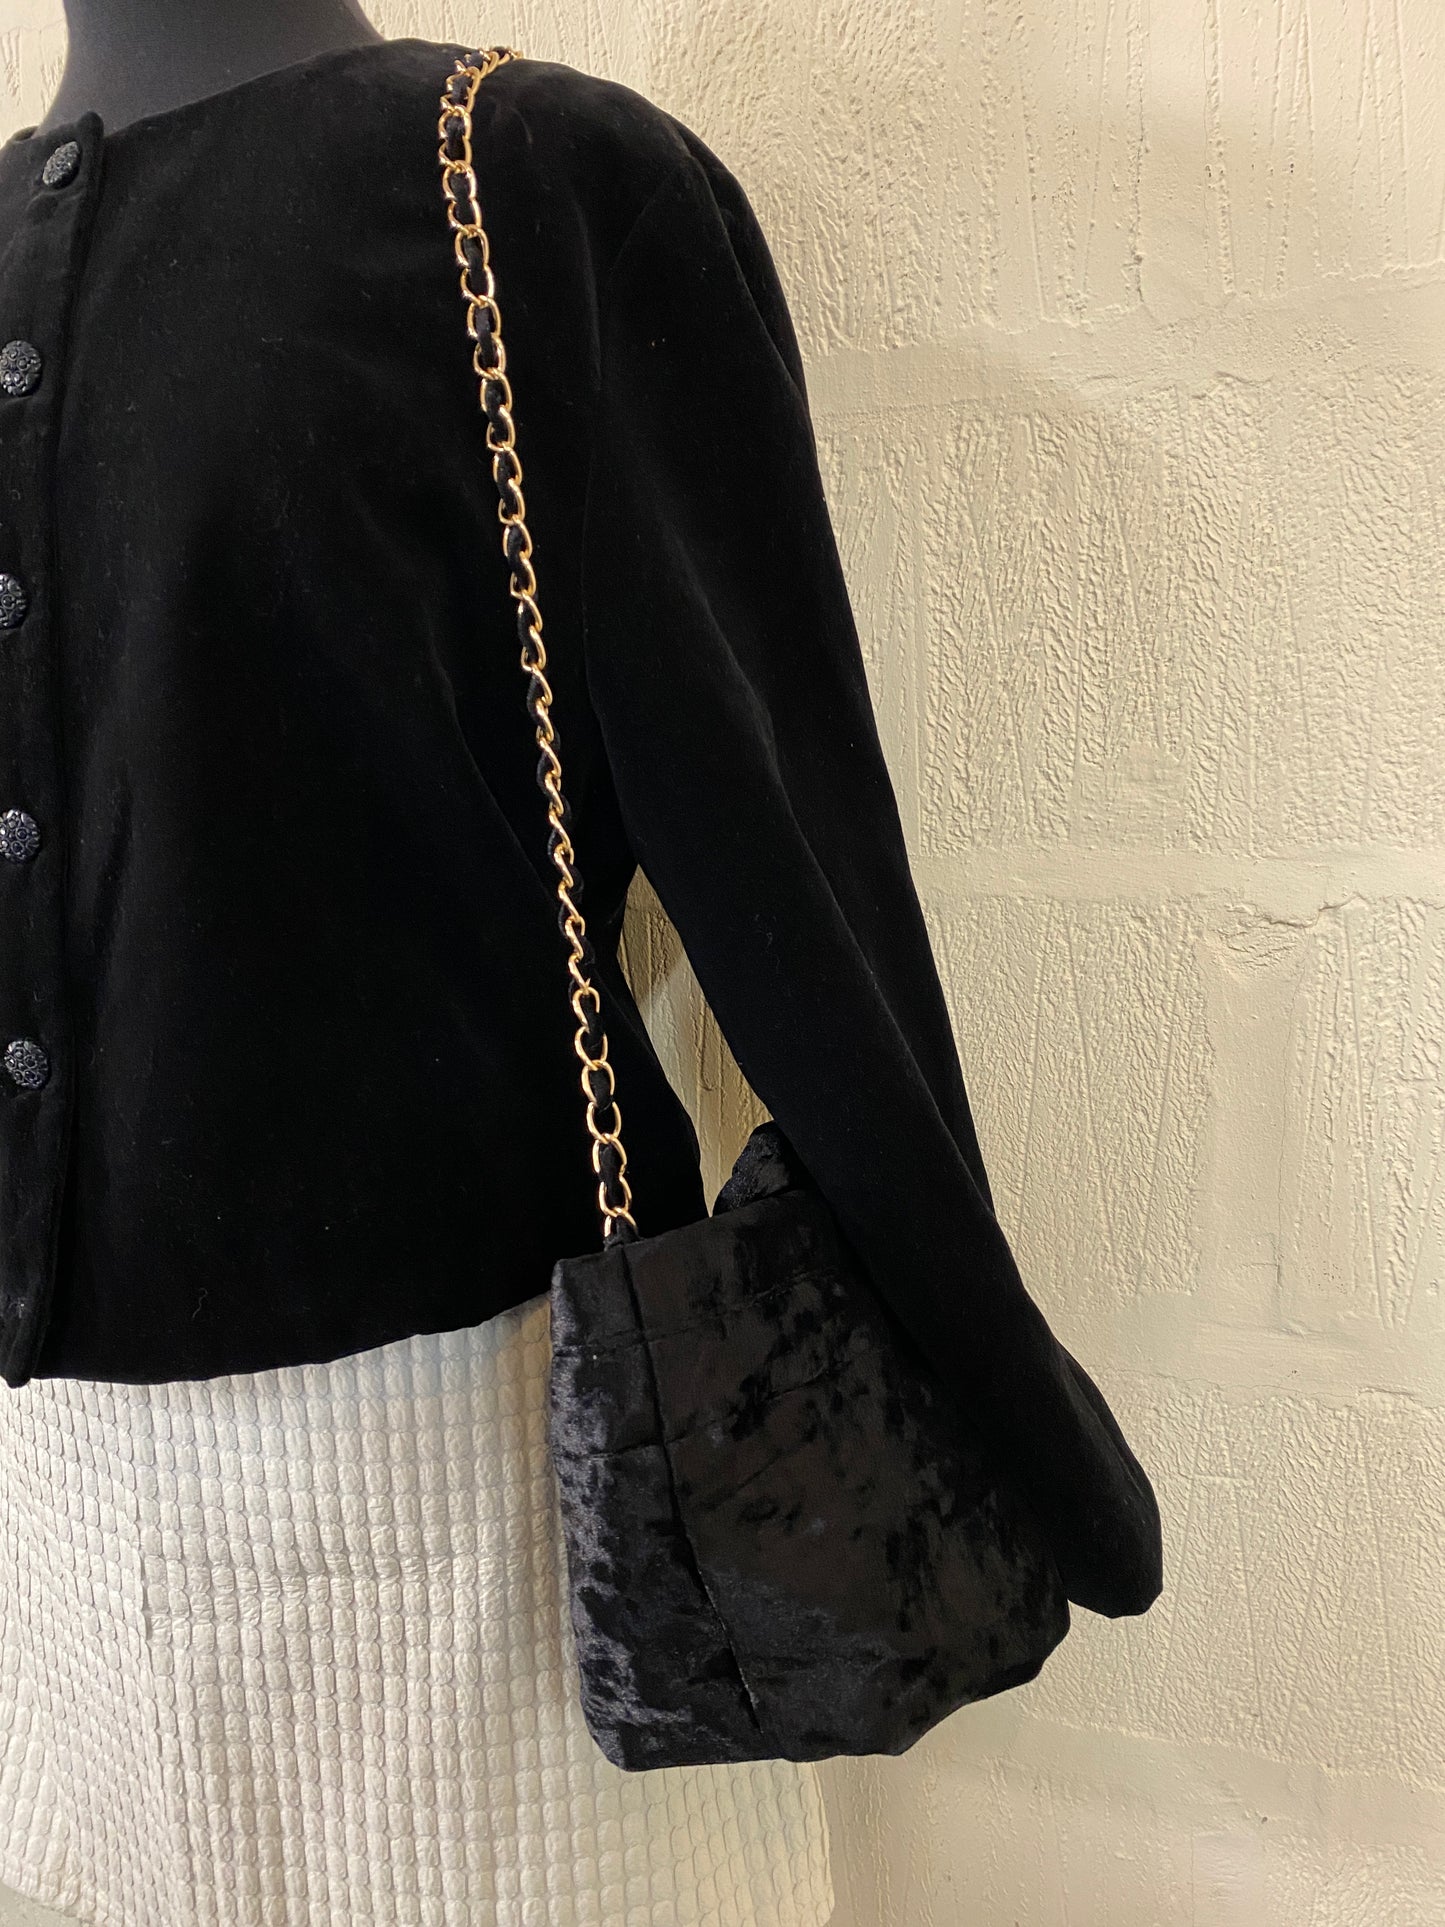 Vintage Black Velvet Cropped Jacket Size 12-14